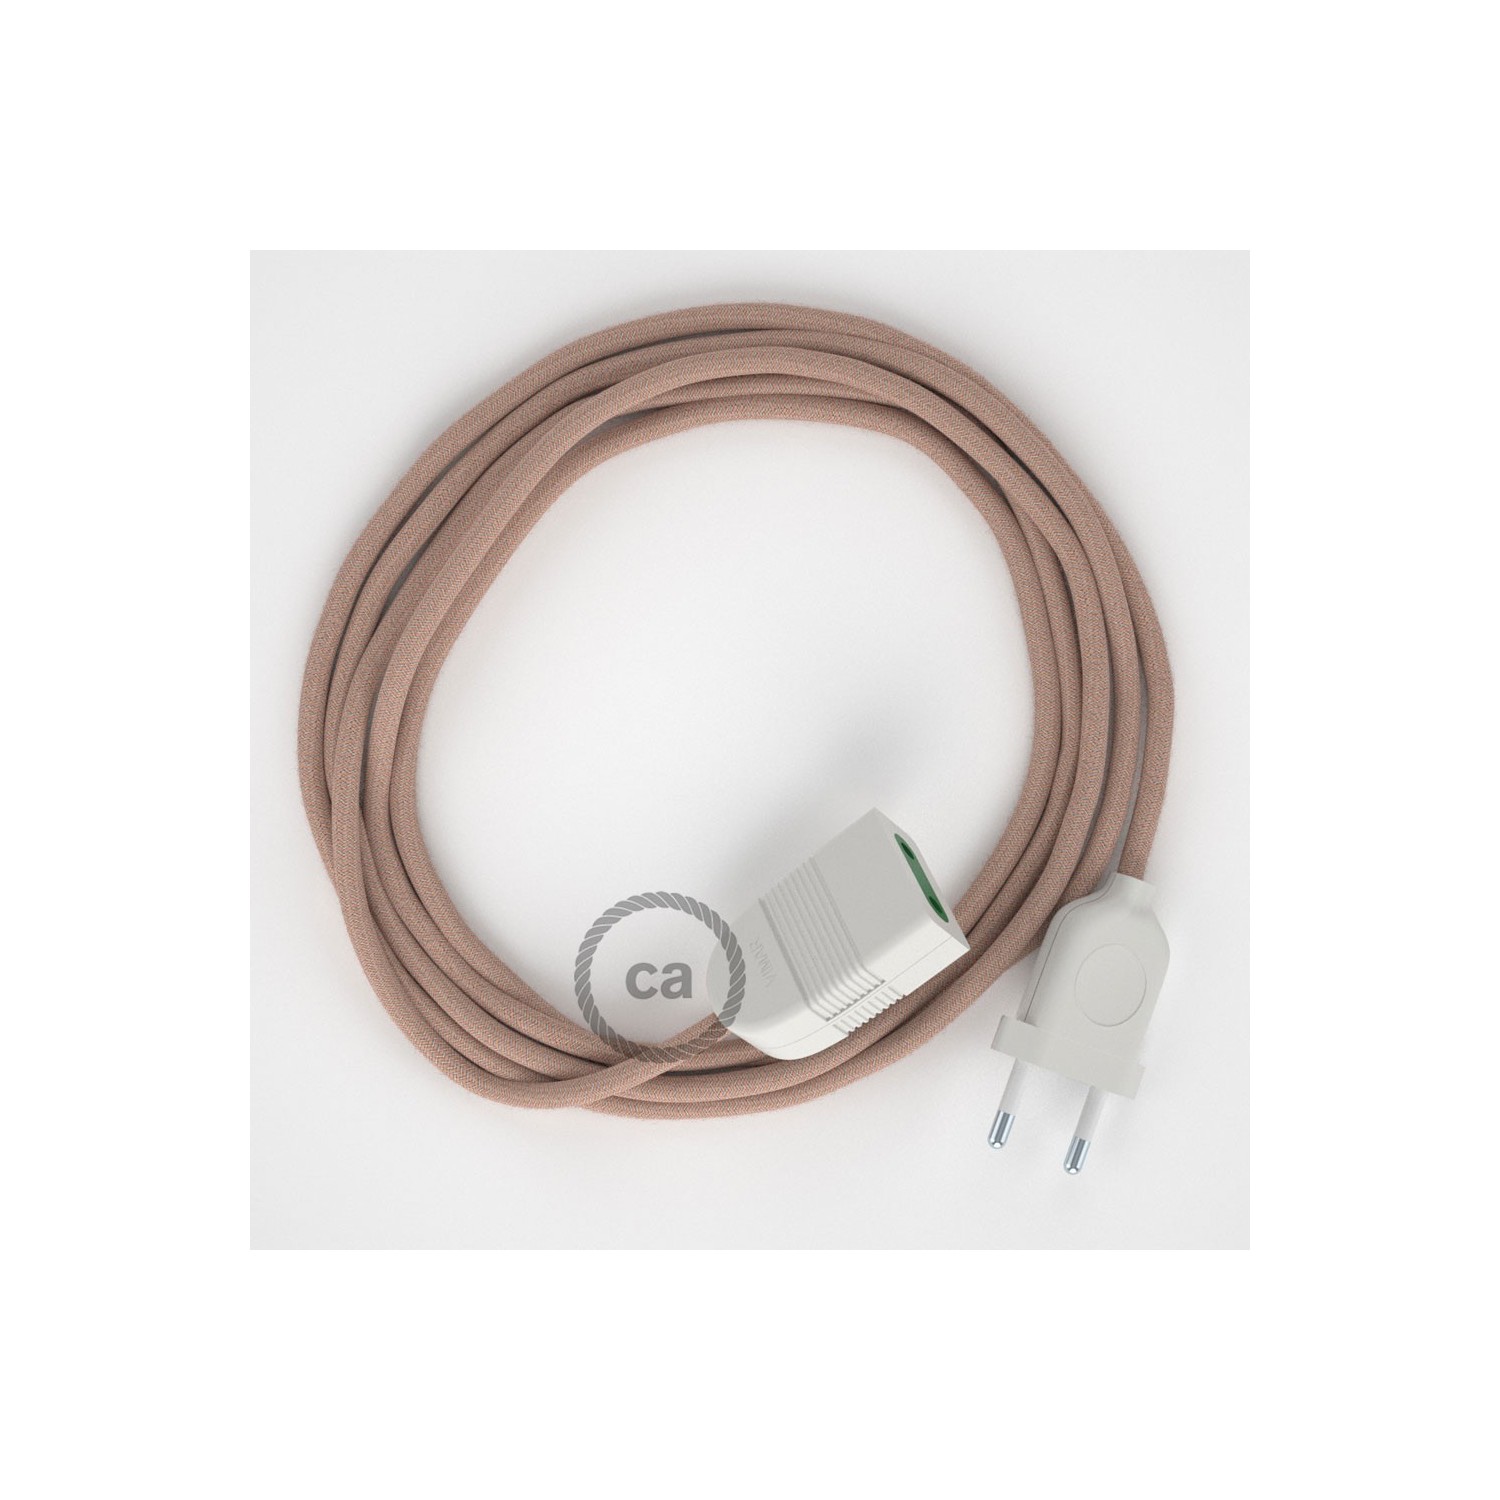 Podaljševalni kabel za napajanje (2P 10A) zigzag, rožnati naravni lan in bombaž RD71 - Made in Italy